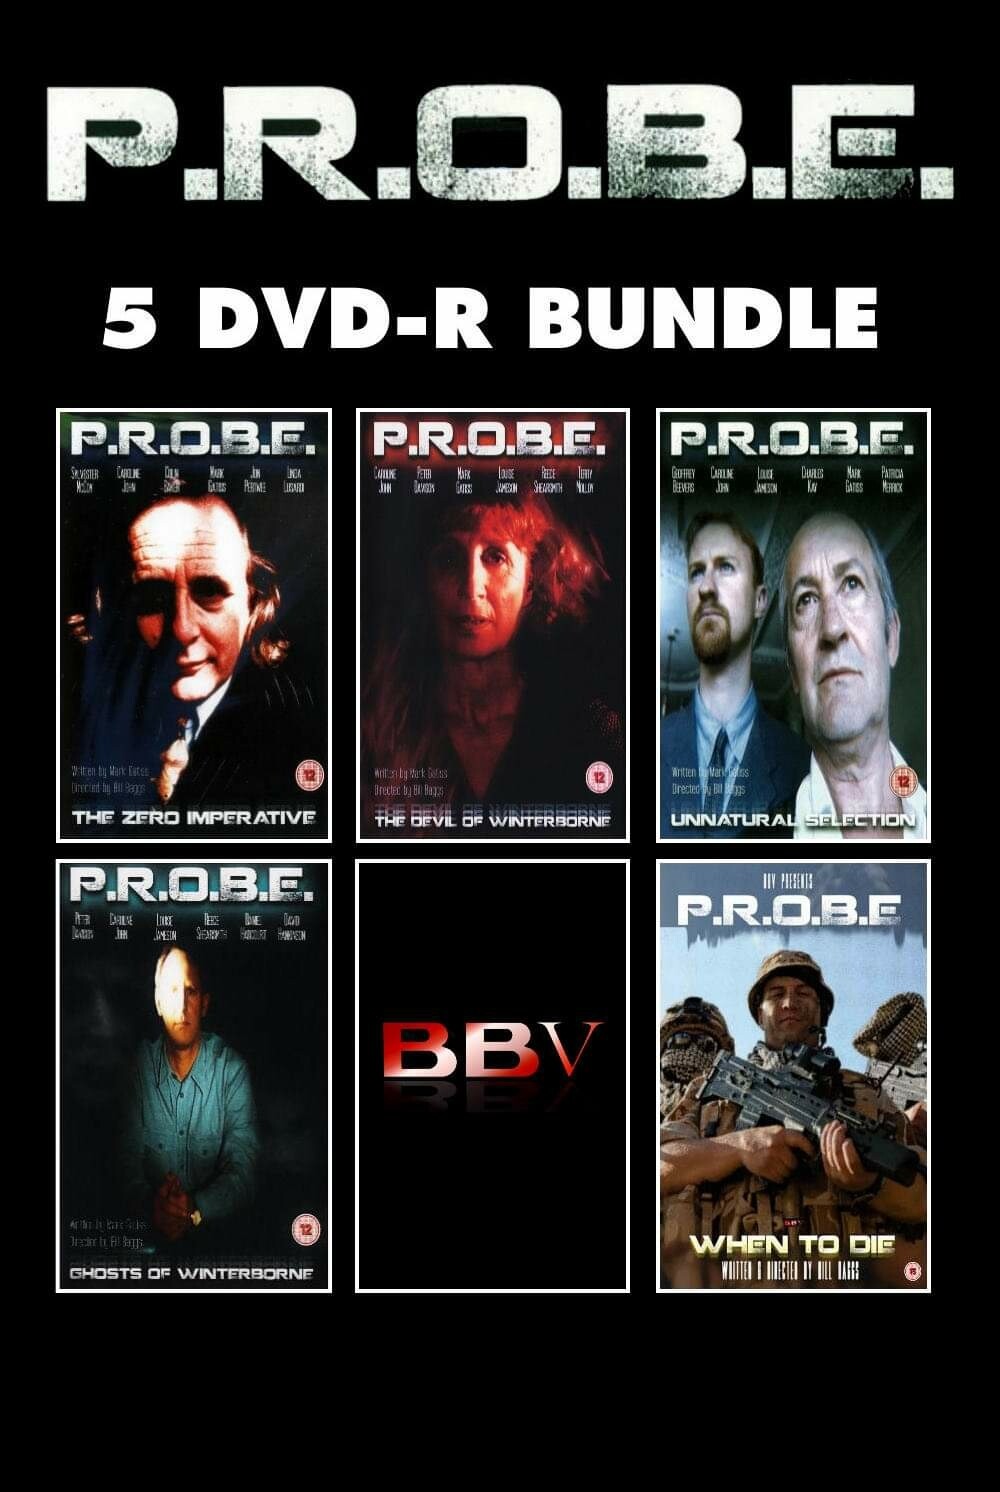 P.R.O.B.E. 5 DVD-R Bundle (DVDR) SAVE MONEY